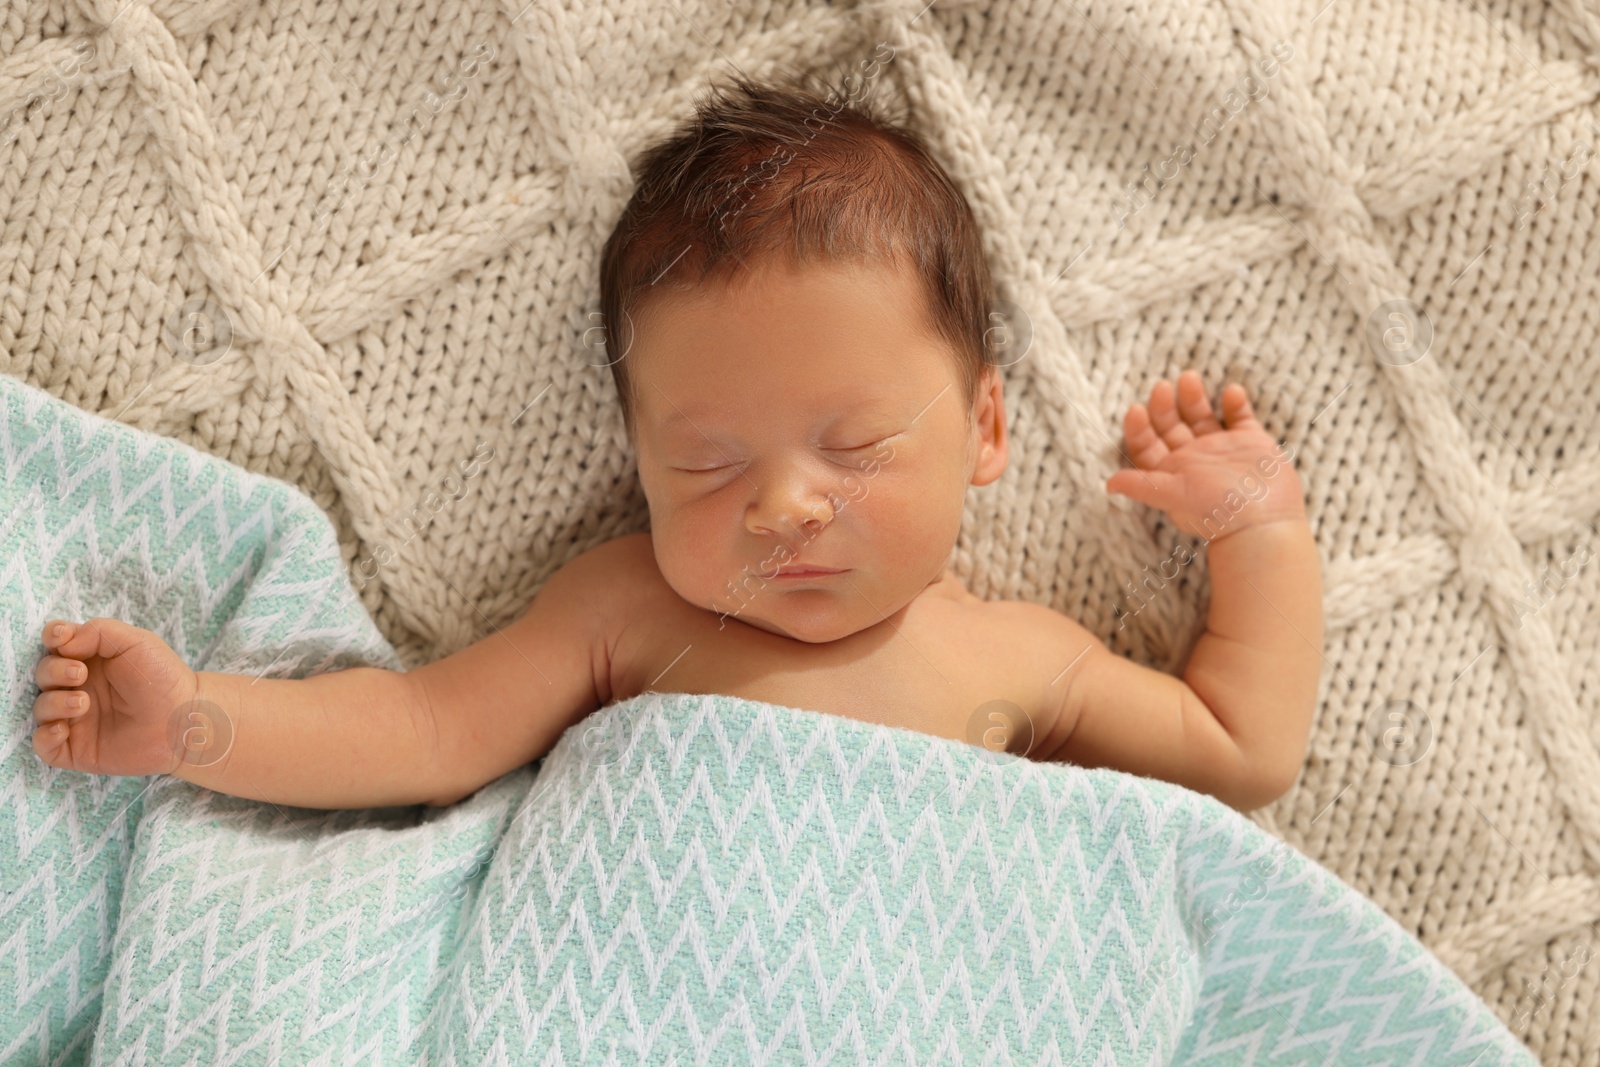 Photo of Cute newborn baby sleeping on beige blanket, top view